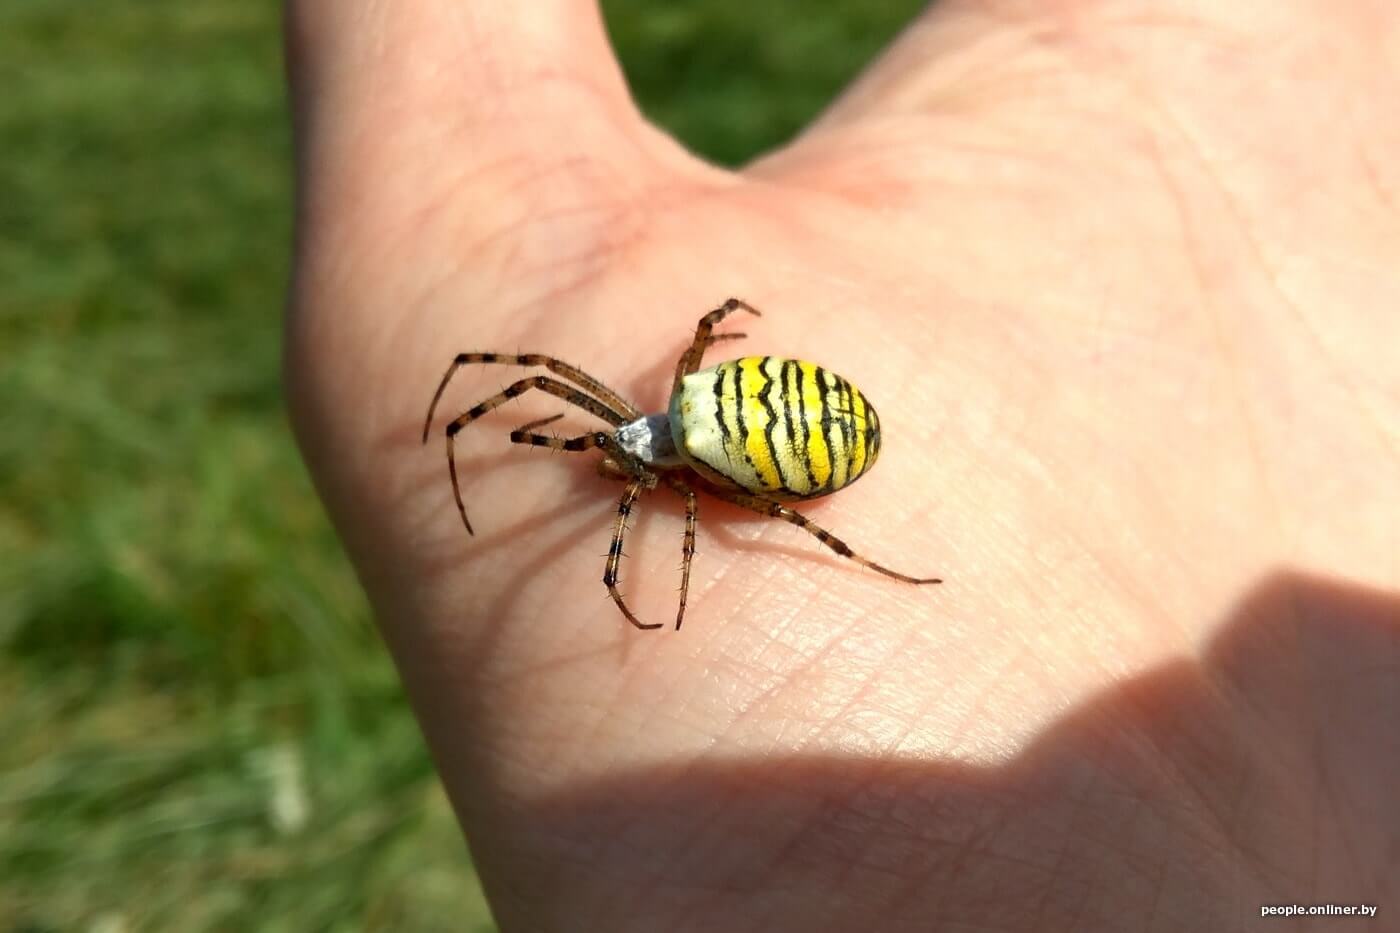 Опасен ли паук-оса для человека. Укус паука-осы очень болезненный. Фото.